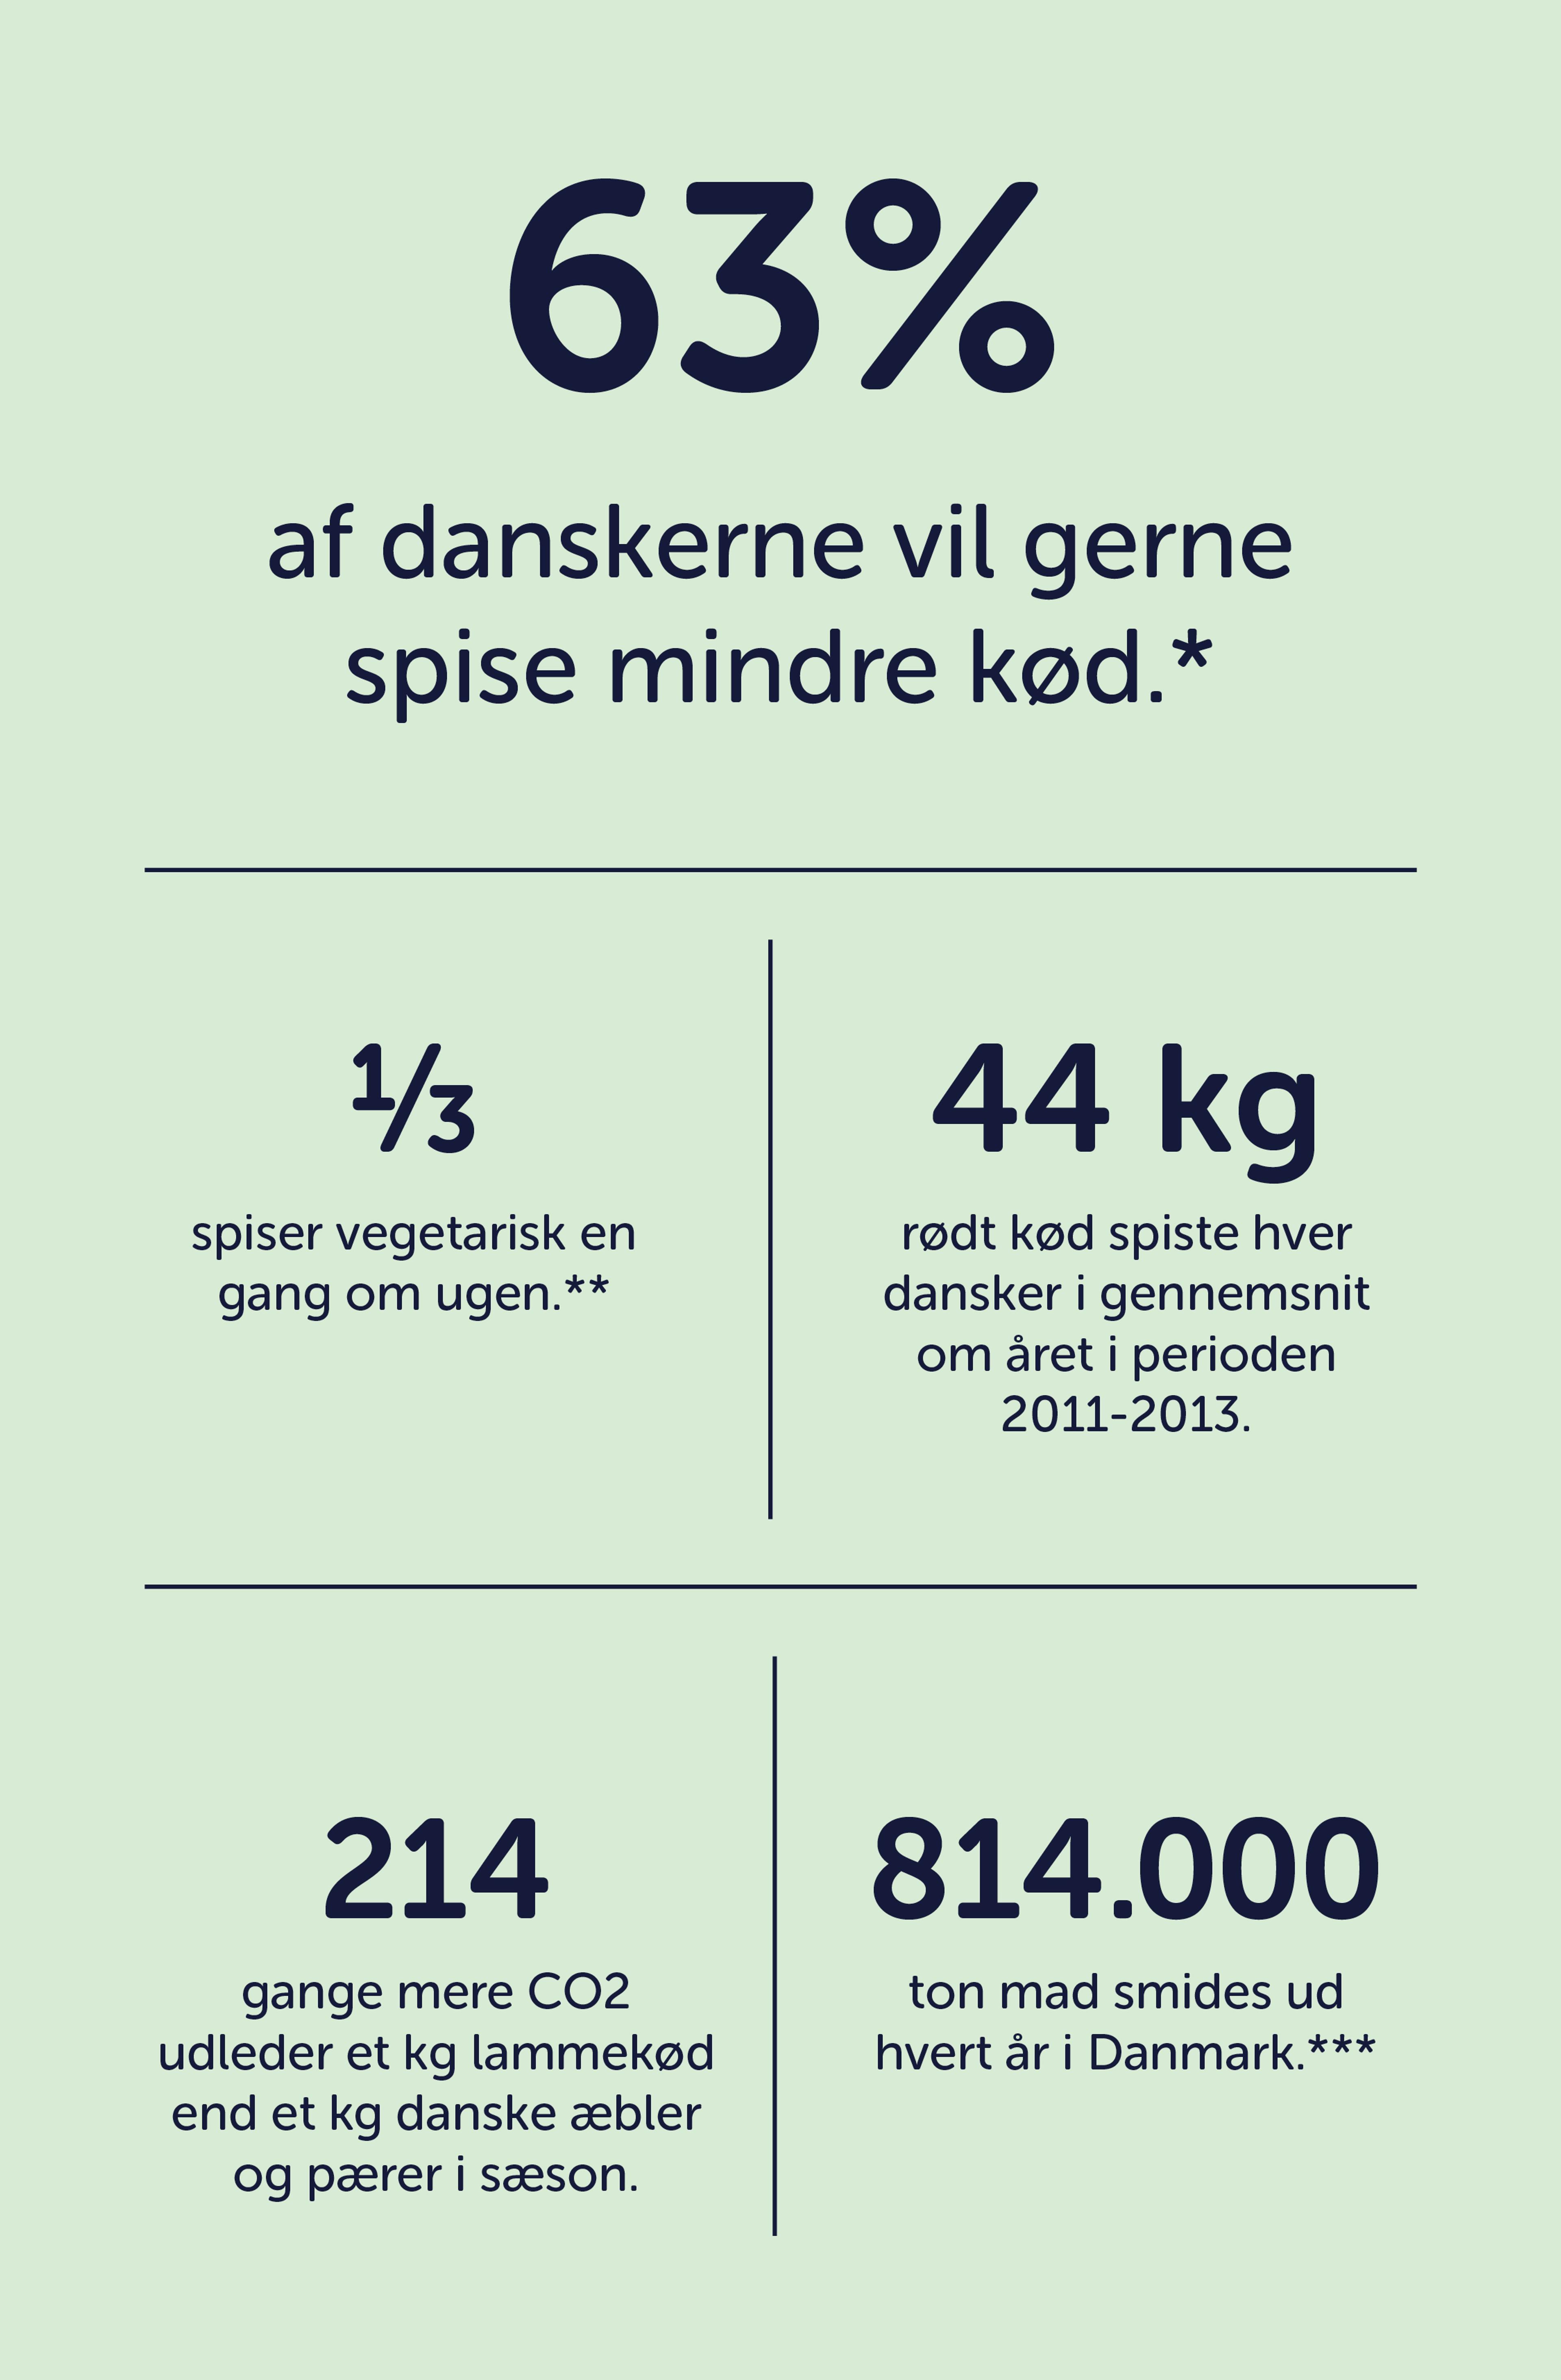 63% av danskerne vil gerne spise mindre kød.